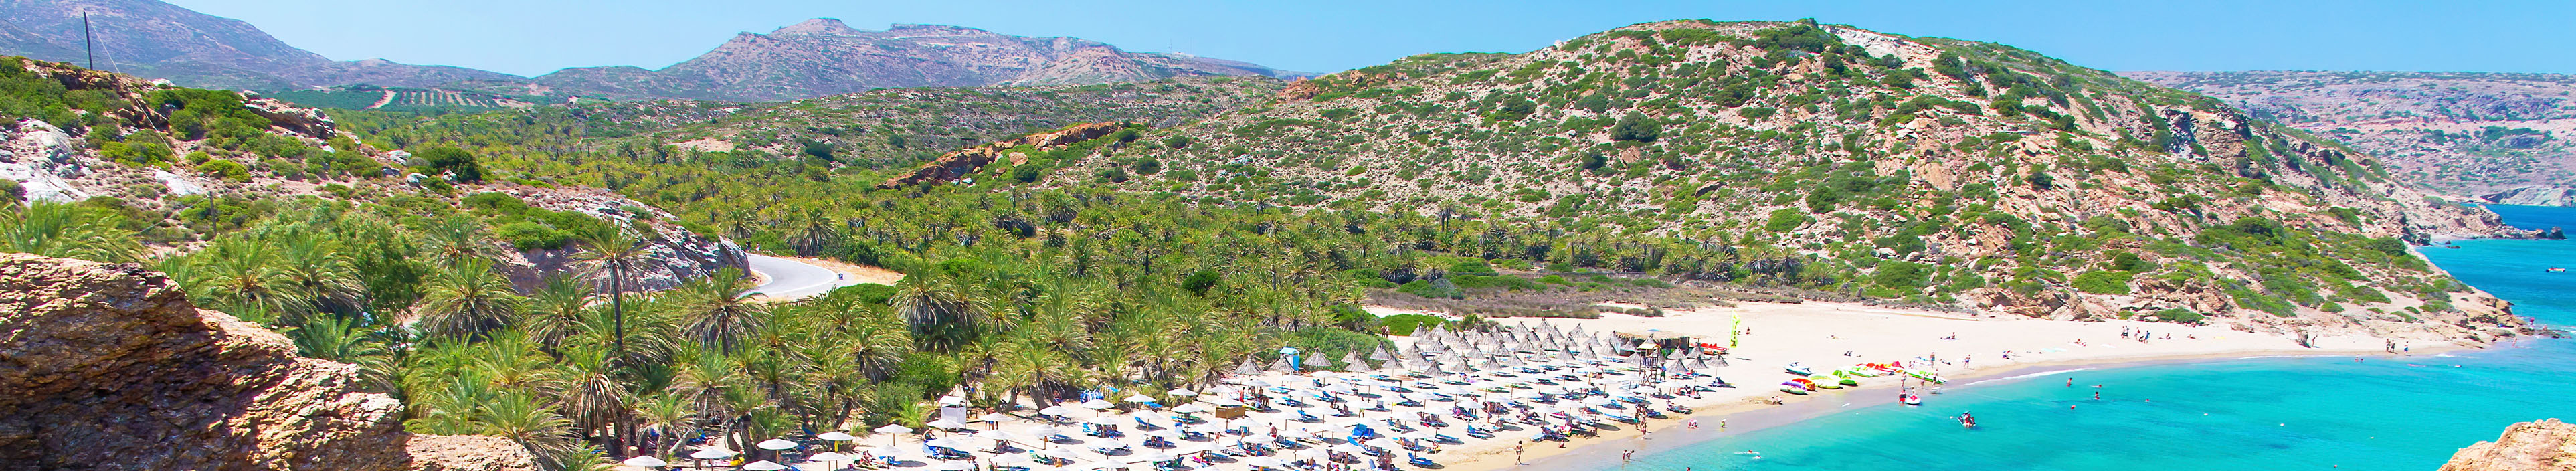 Strand auf Kreta, mit Sonnenschirmen und Liegen.